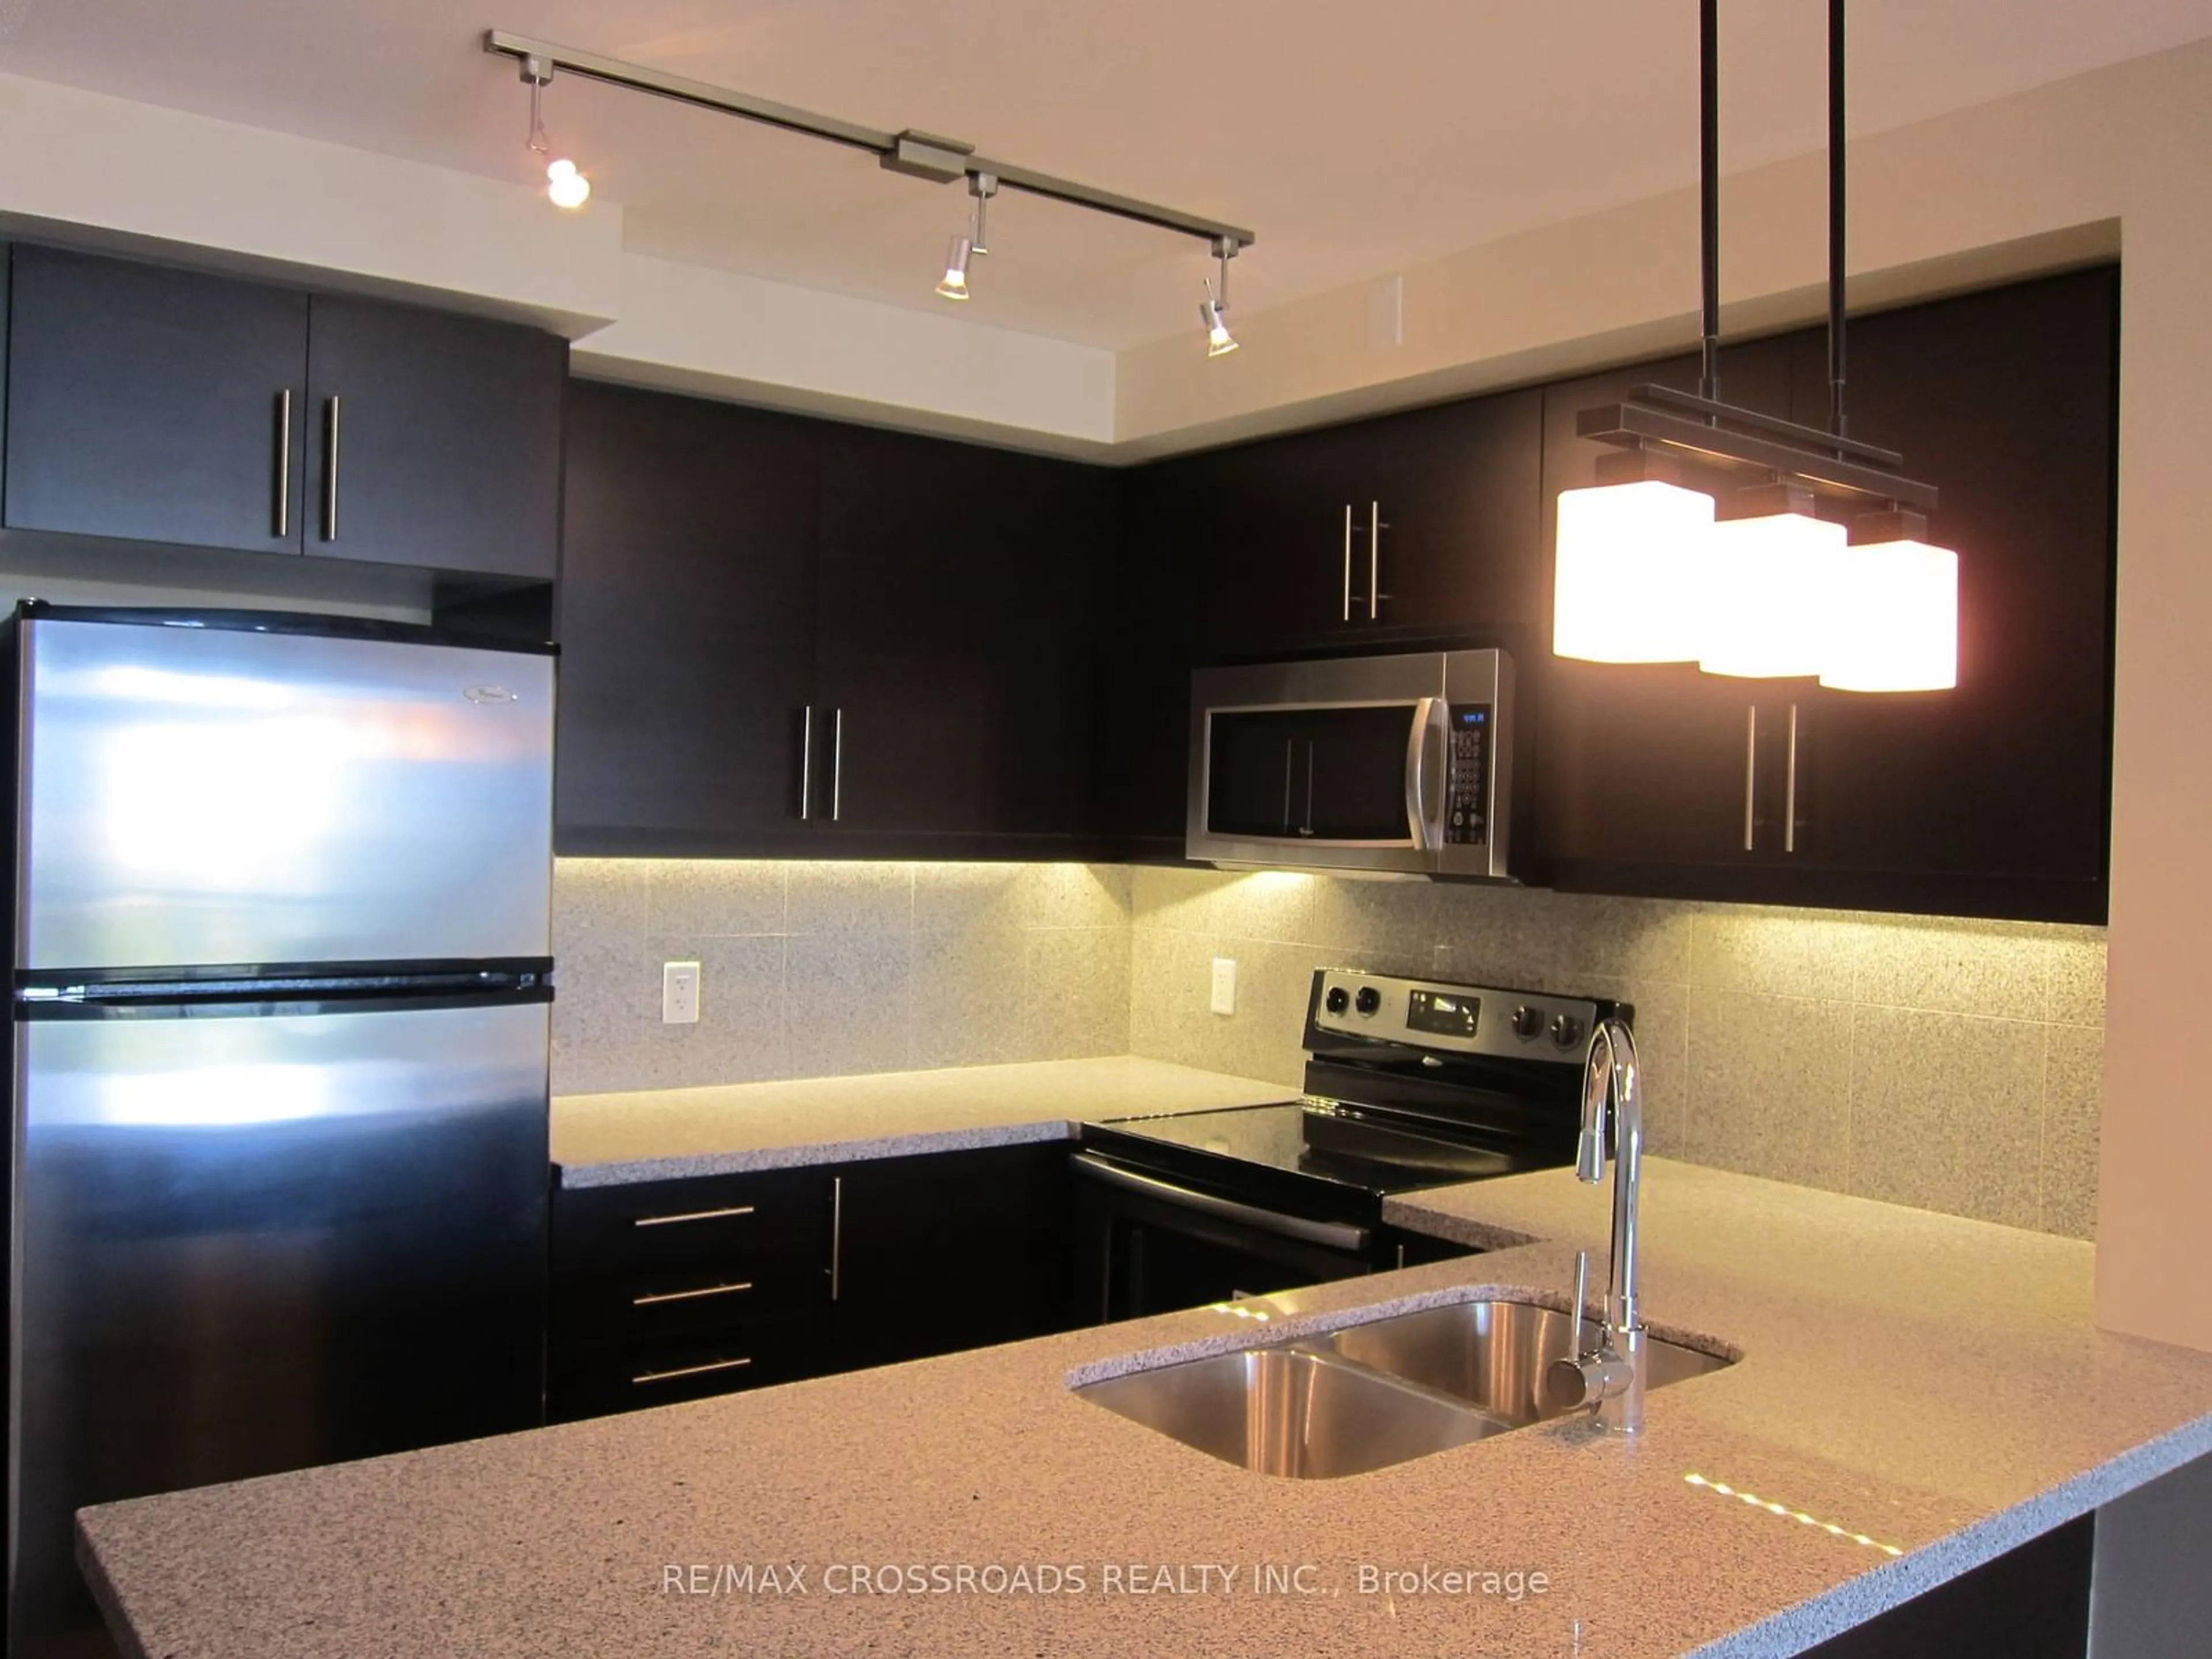 Contemporary kitchen for 676 Sheppard Ave #LPH 09, Toronto Ontario M2K 3E7